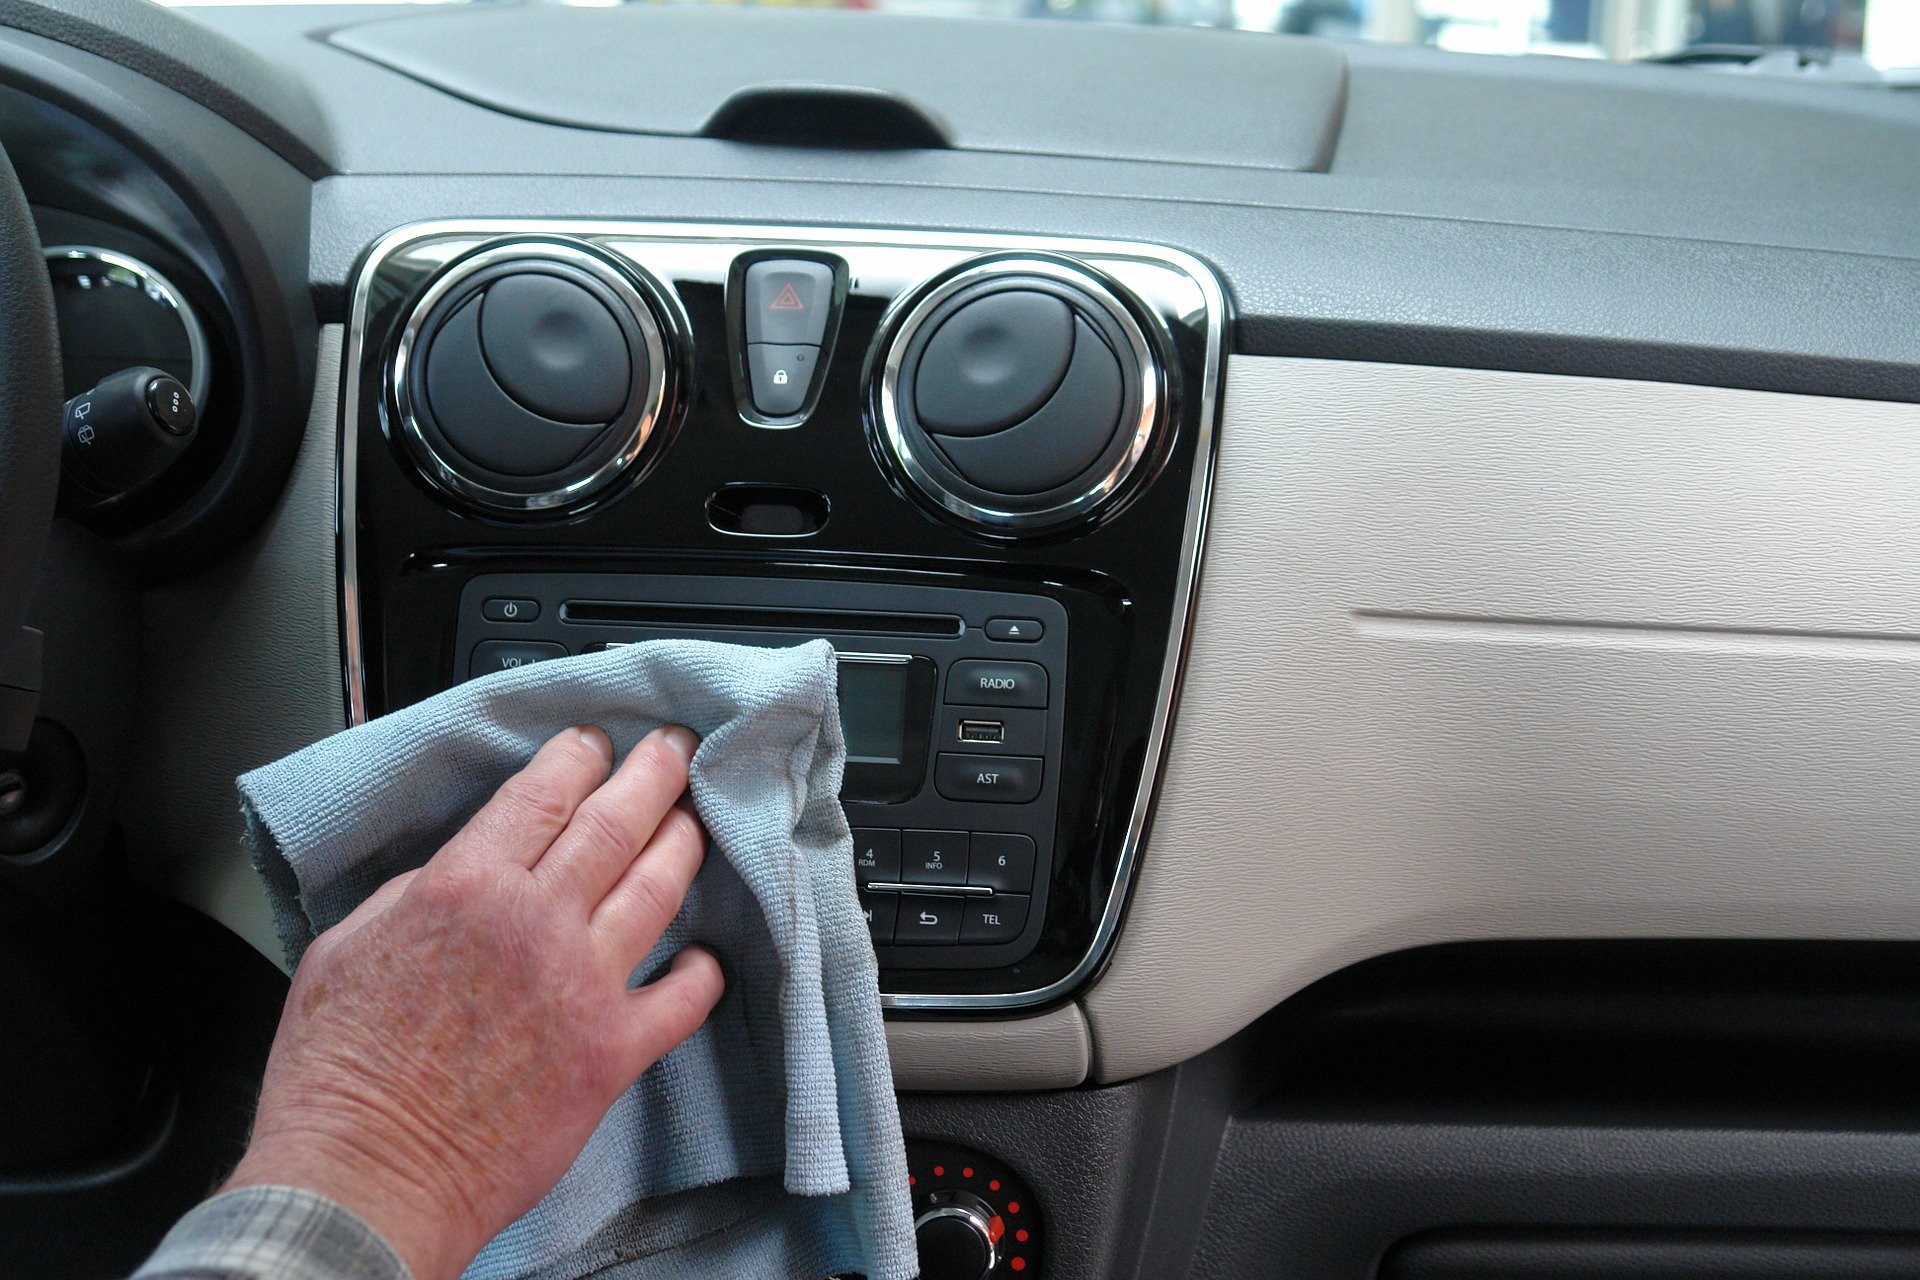 Udržet interiér vozu dlouhodobě čistý není náročné časově ani finančně